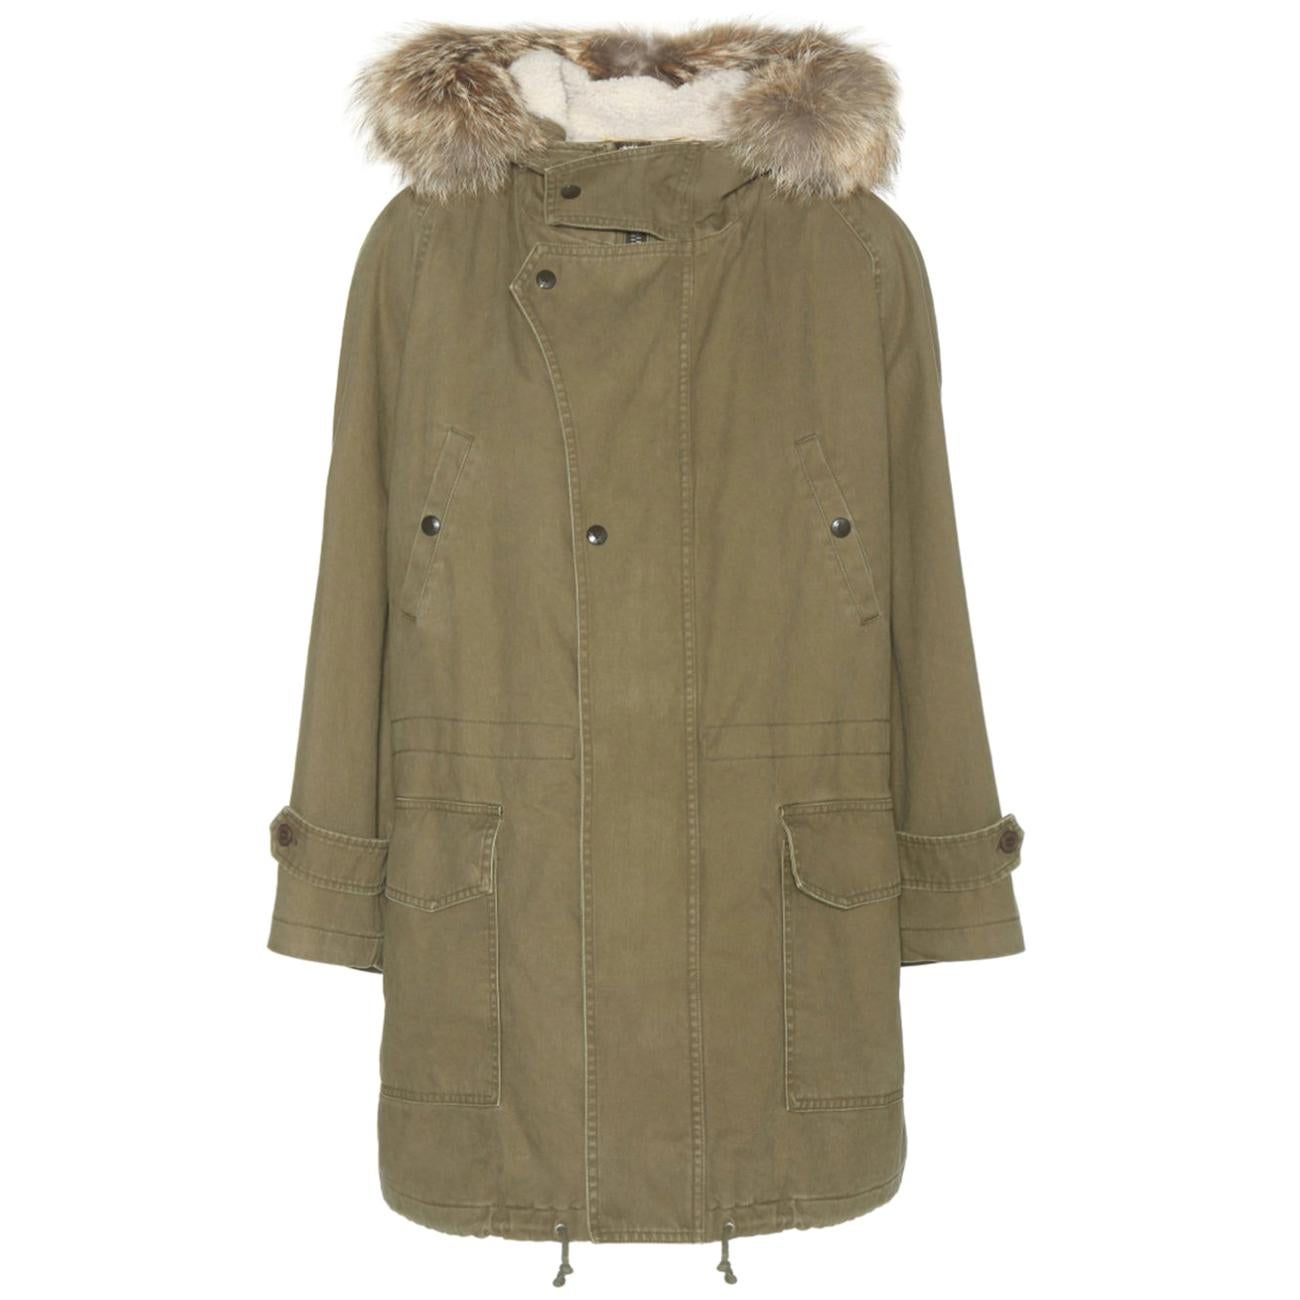 Saint Laurent Shearling-Lined Fur-Trimmed Parka Jacket 